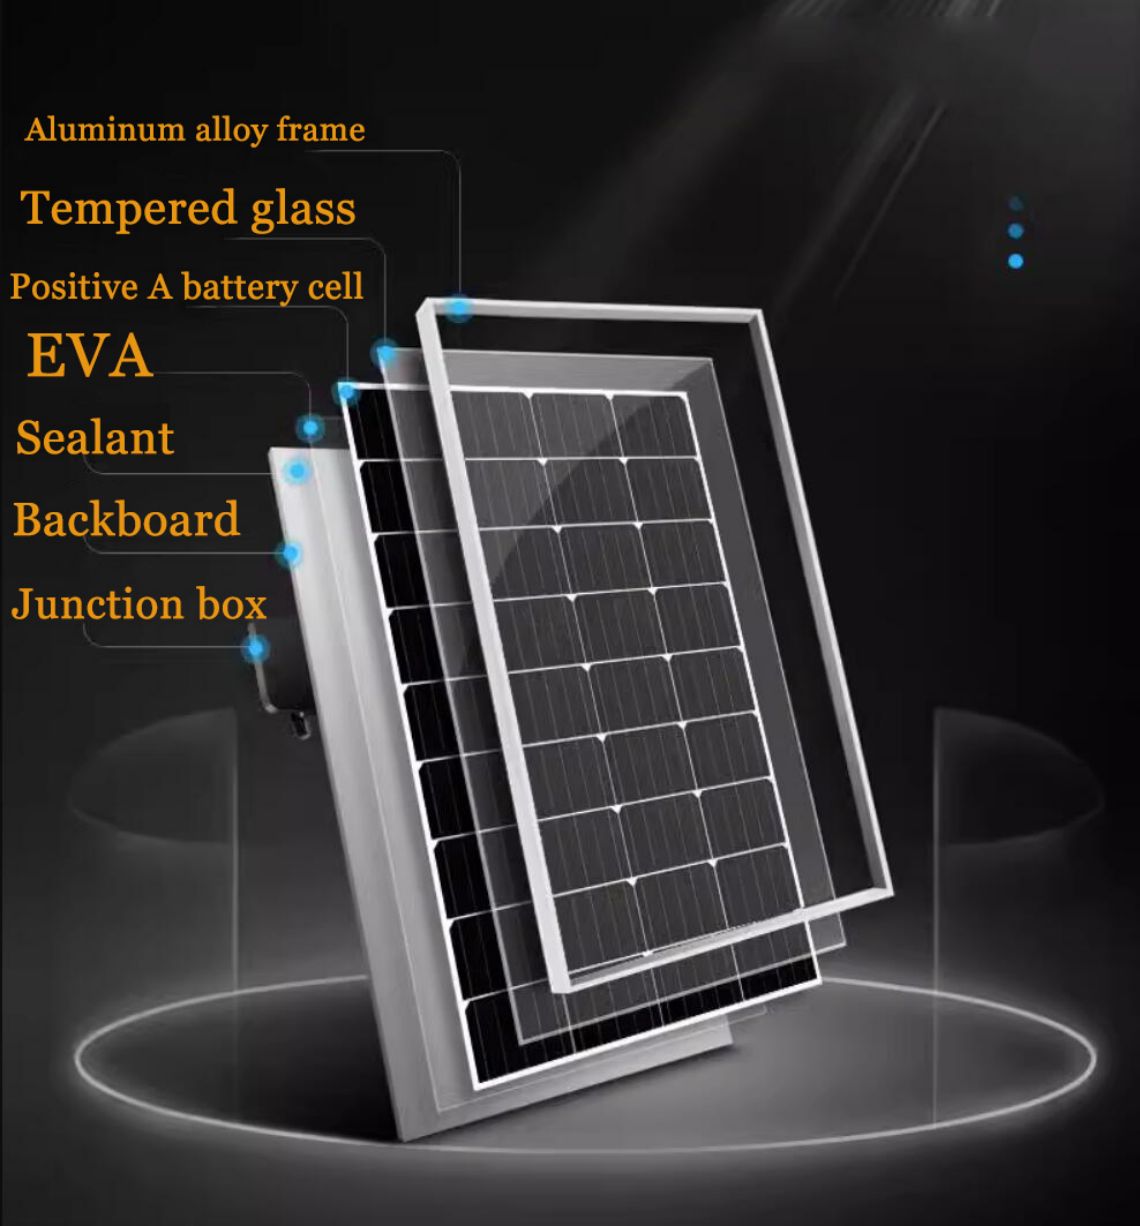 Moduli N-TOPCon i njëanshëm i silikonit monokristalor diellor është një lloj moduli fotovoltaik diellor me efikasitet të lartë.Është prodhuar duke përdorur material silikoni monokristalor dhe ka një strukturë N-TOPCon të njëanshme.Kjo strukturë mund të përmirësojë efikasitetin e konvertimit fotoelektrik dhe të sigurojë prodhim më të mirë të rrymës.